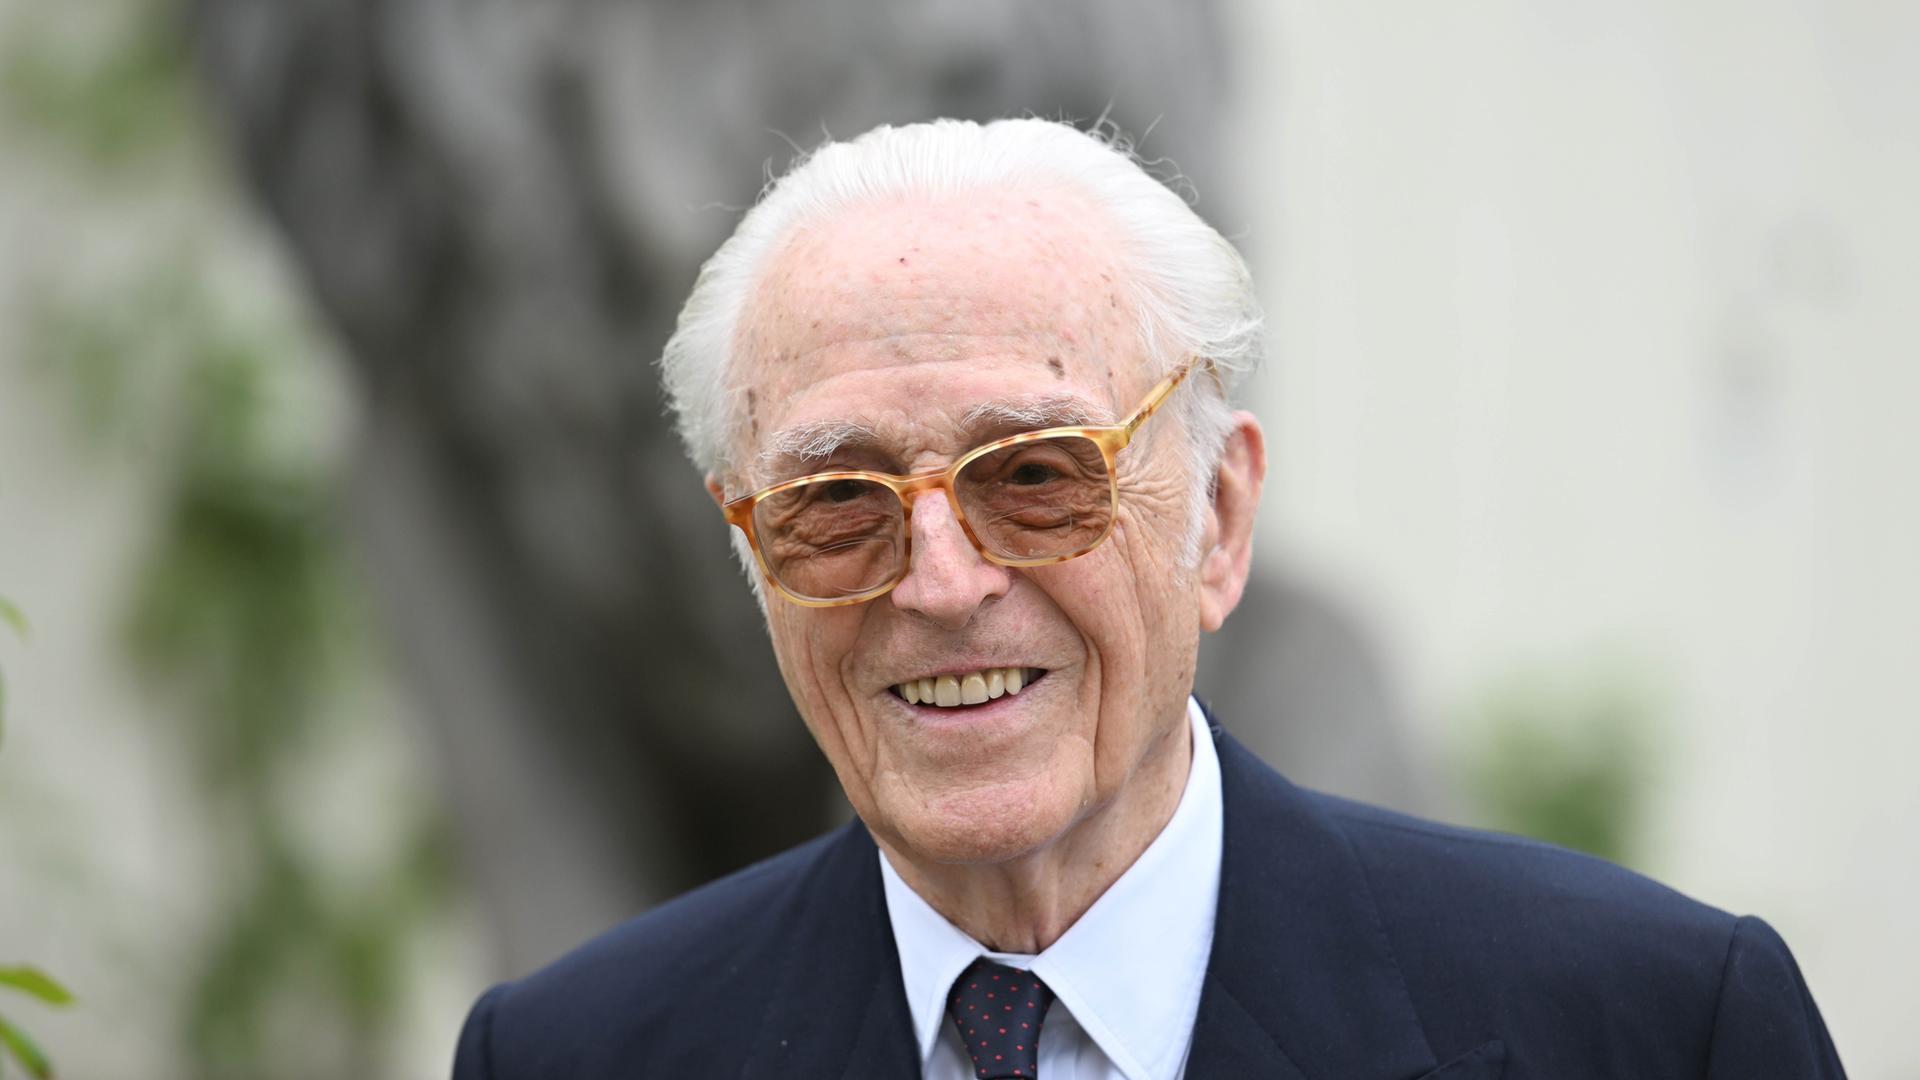 Herzog Franz von Bayern kommt zur Verleihung des Romano-Guardini-Preis. Der 88-jährige Chef des Hauses Wittelsbach erhält die mit 10 000 Euro dotierte Auszeichnung für sein lebenslanges Engagement in Bereichen der Kultur und der Wissenschaft in der Katholischen Akademie Bayern.